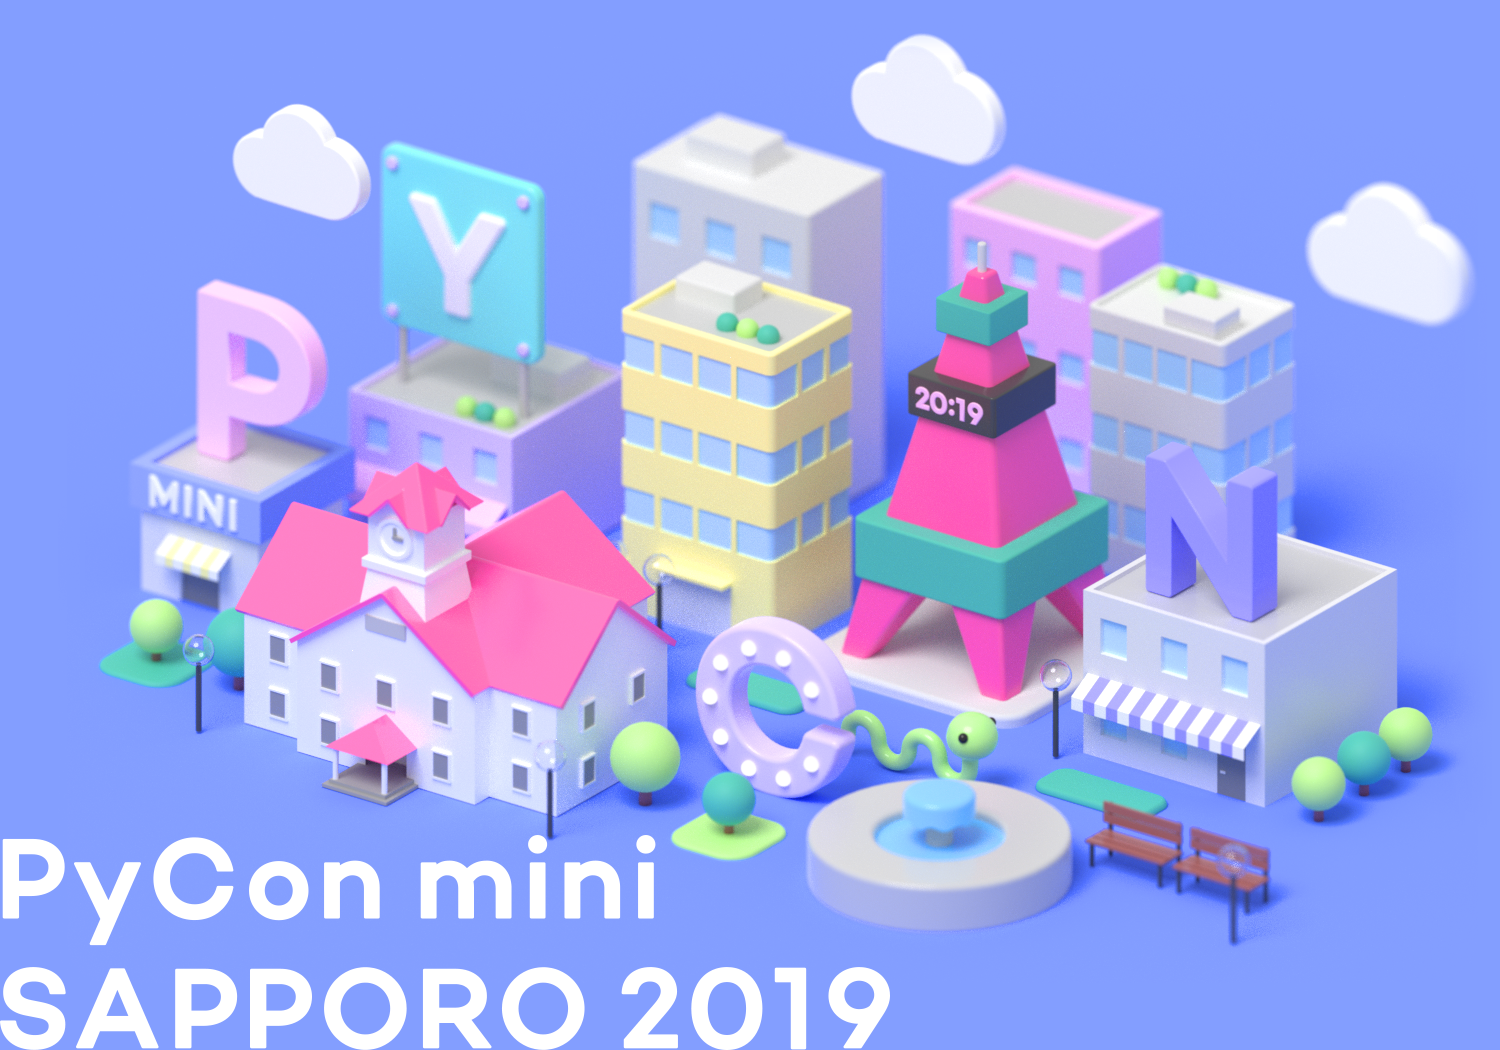 PyCon mini Sapporo 2019